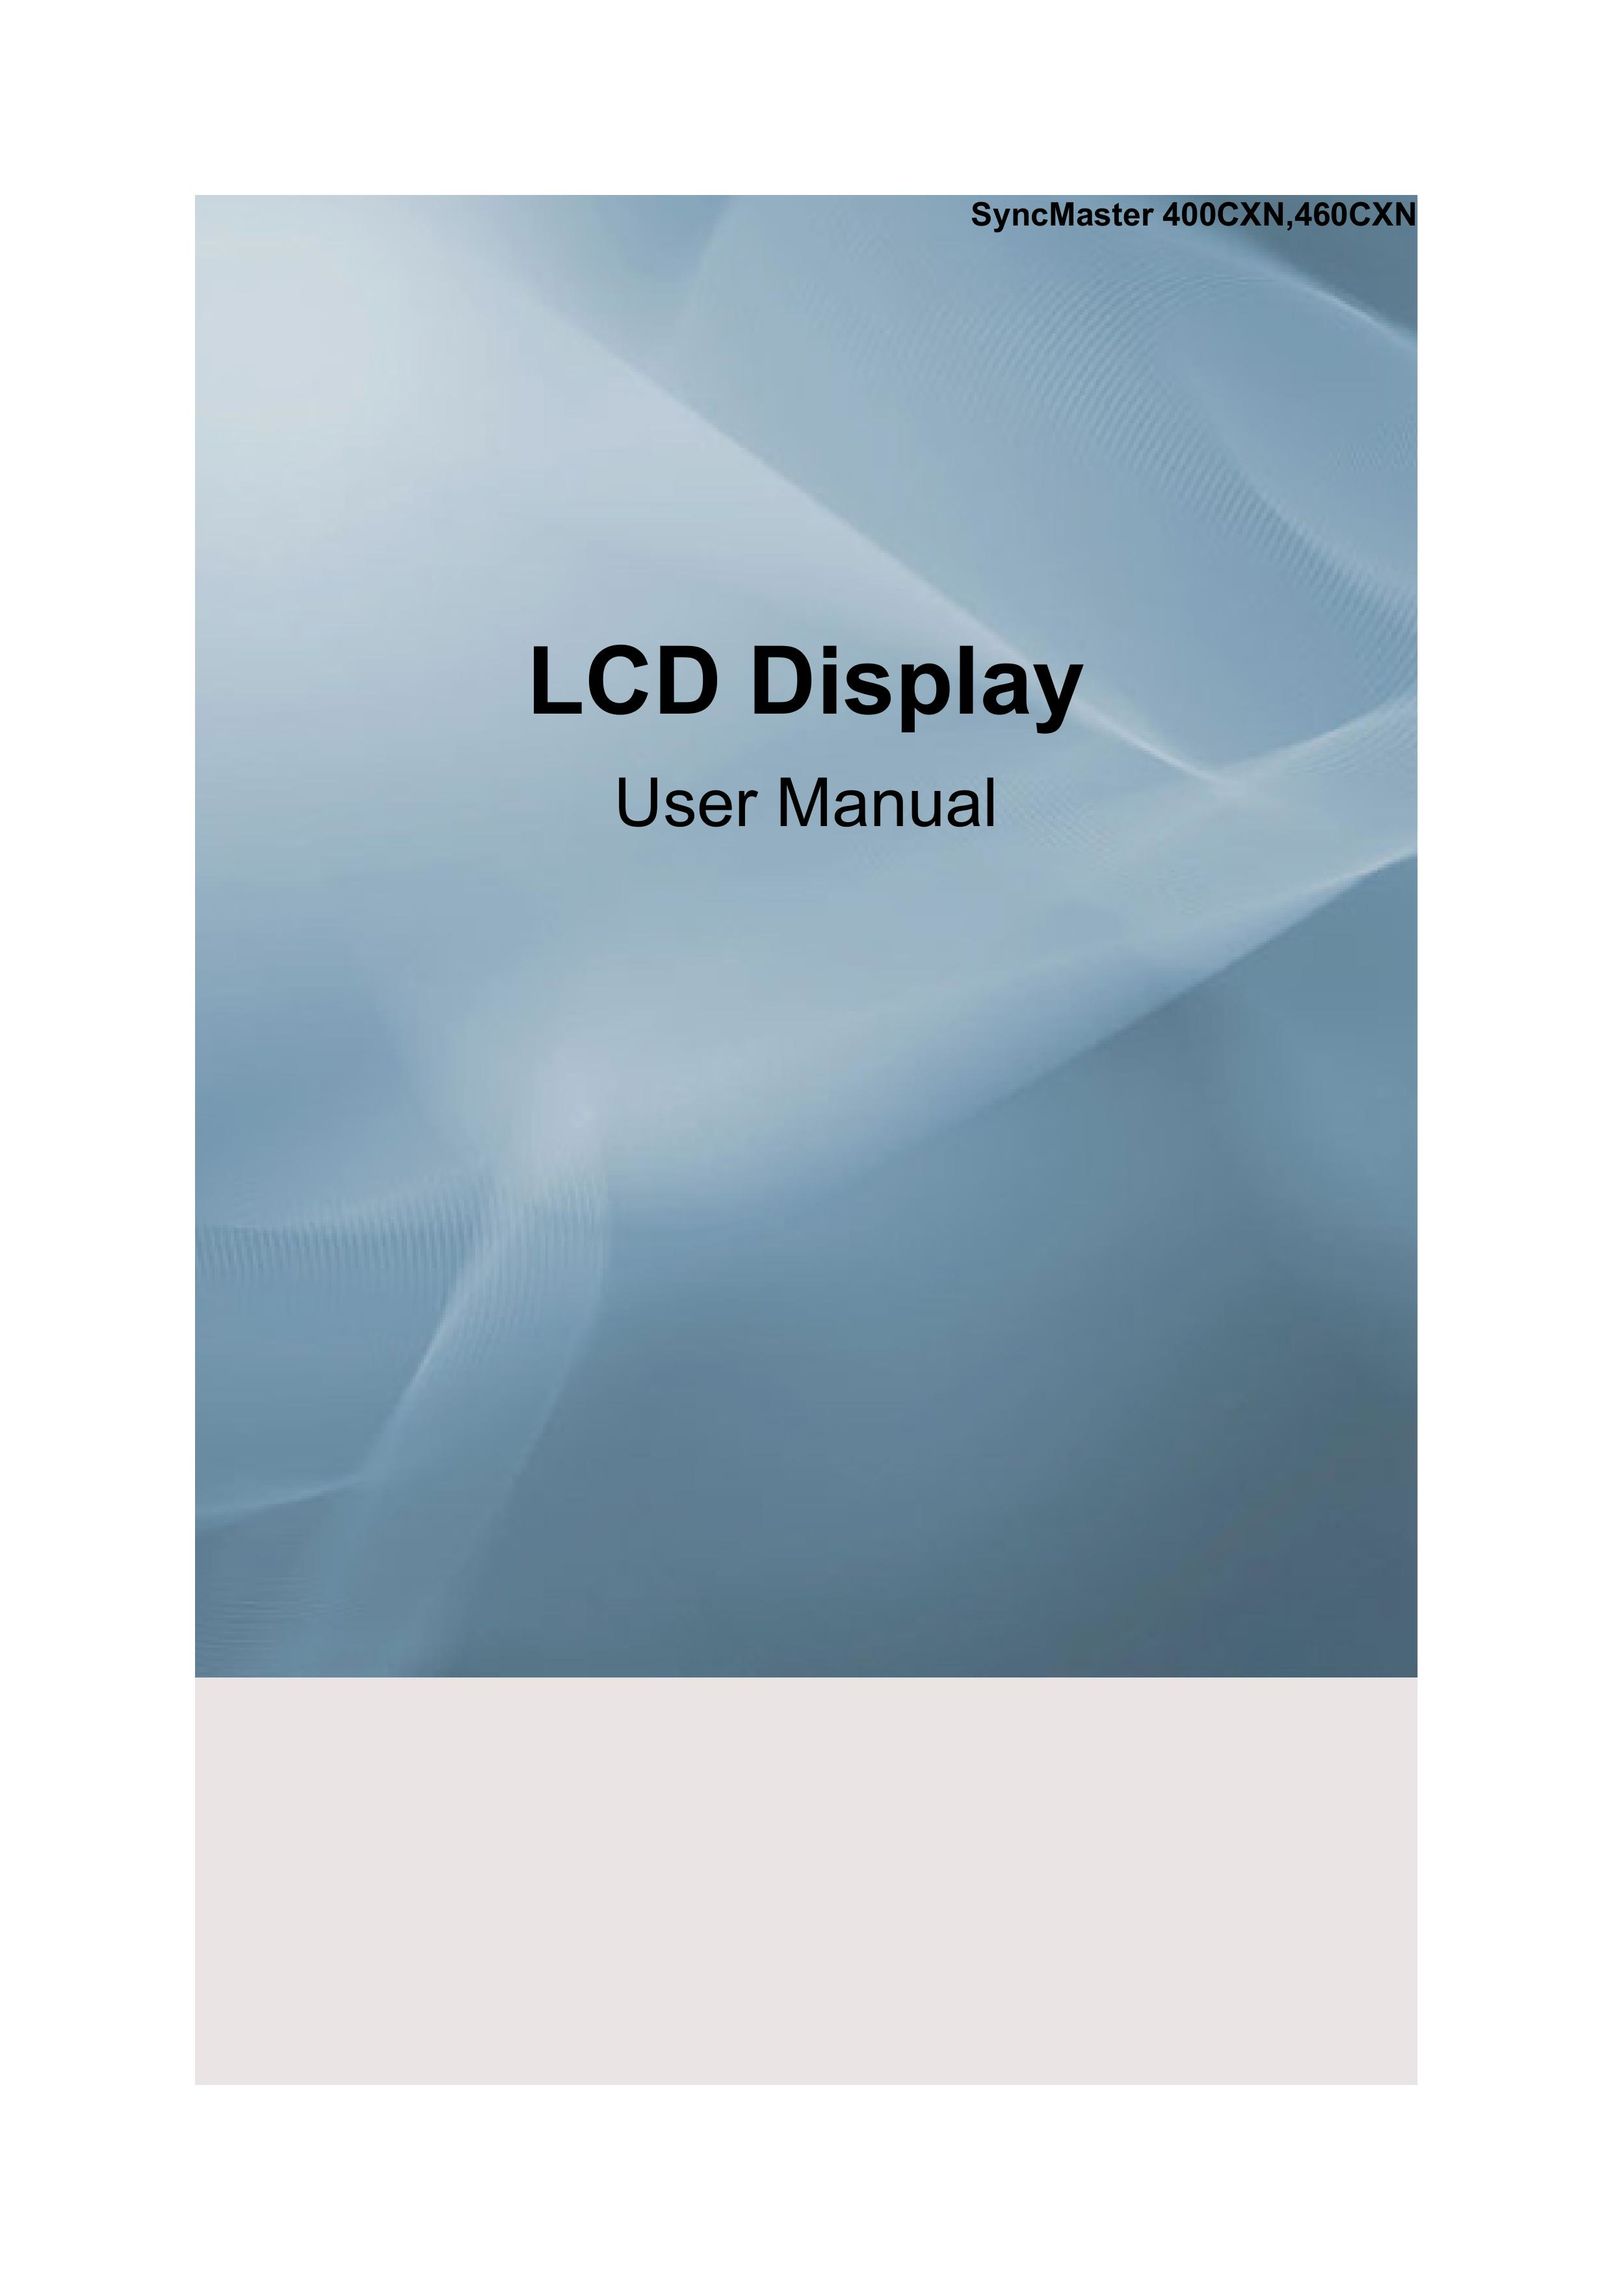 Samsung 400CXN, 460CXN Flat Panel Television User Manual